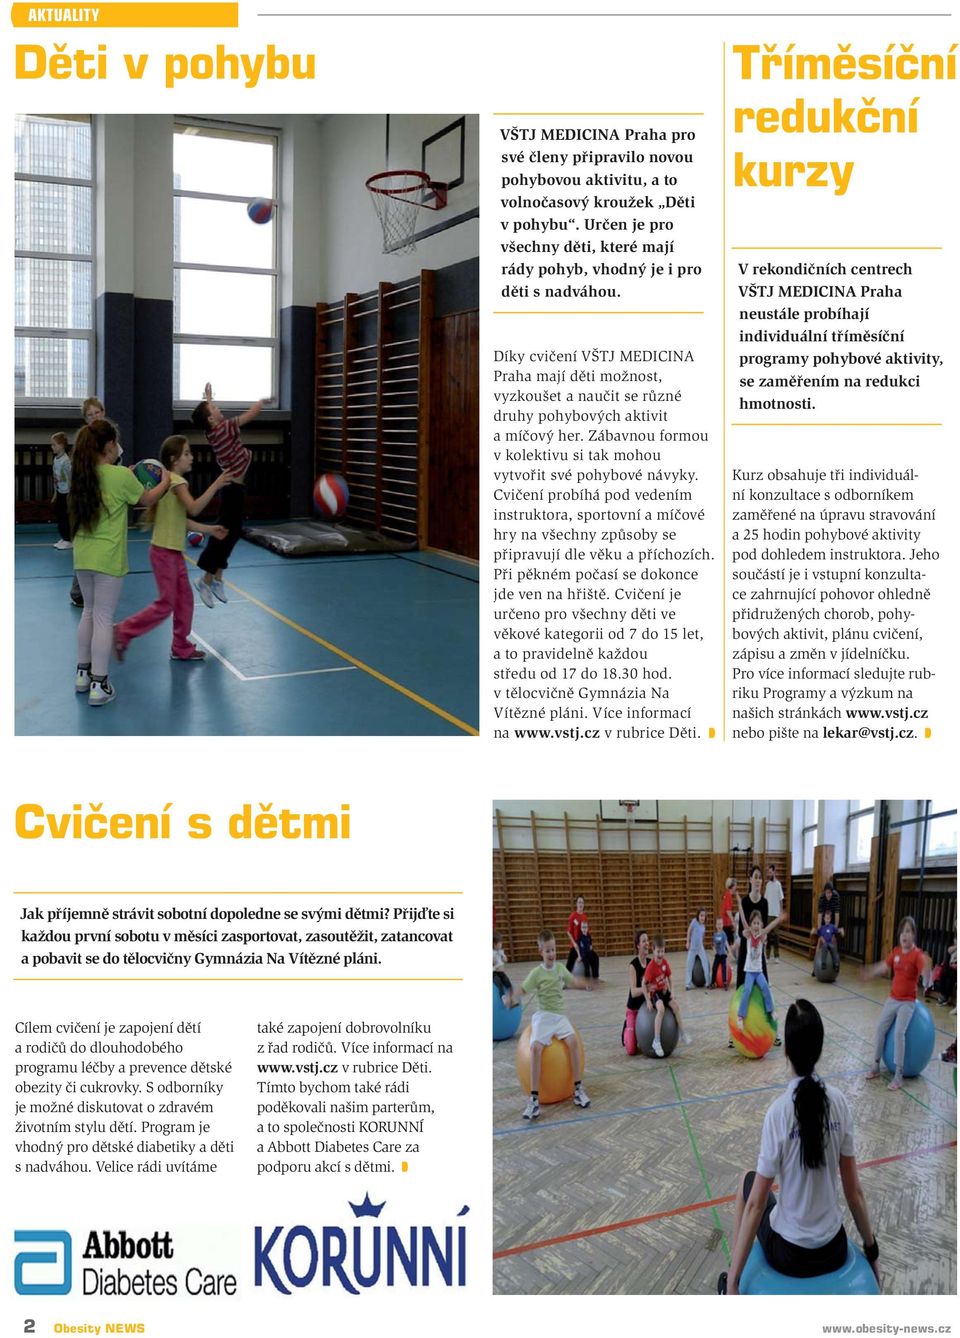 Díky cvičení VŠTJ MEDICINA Praha mají děti možnost, vyzkoušet a naučit se různé druhy pohybových aktivit a míčový her. Zábavnou formou v kolektivu si tak mohou vytvořit své pohybové návyky.